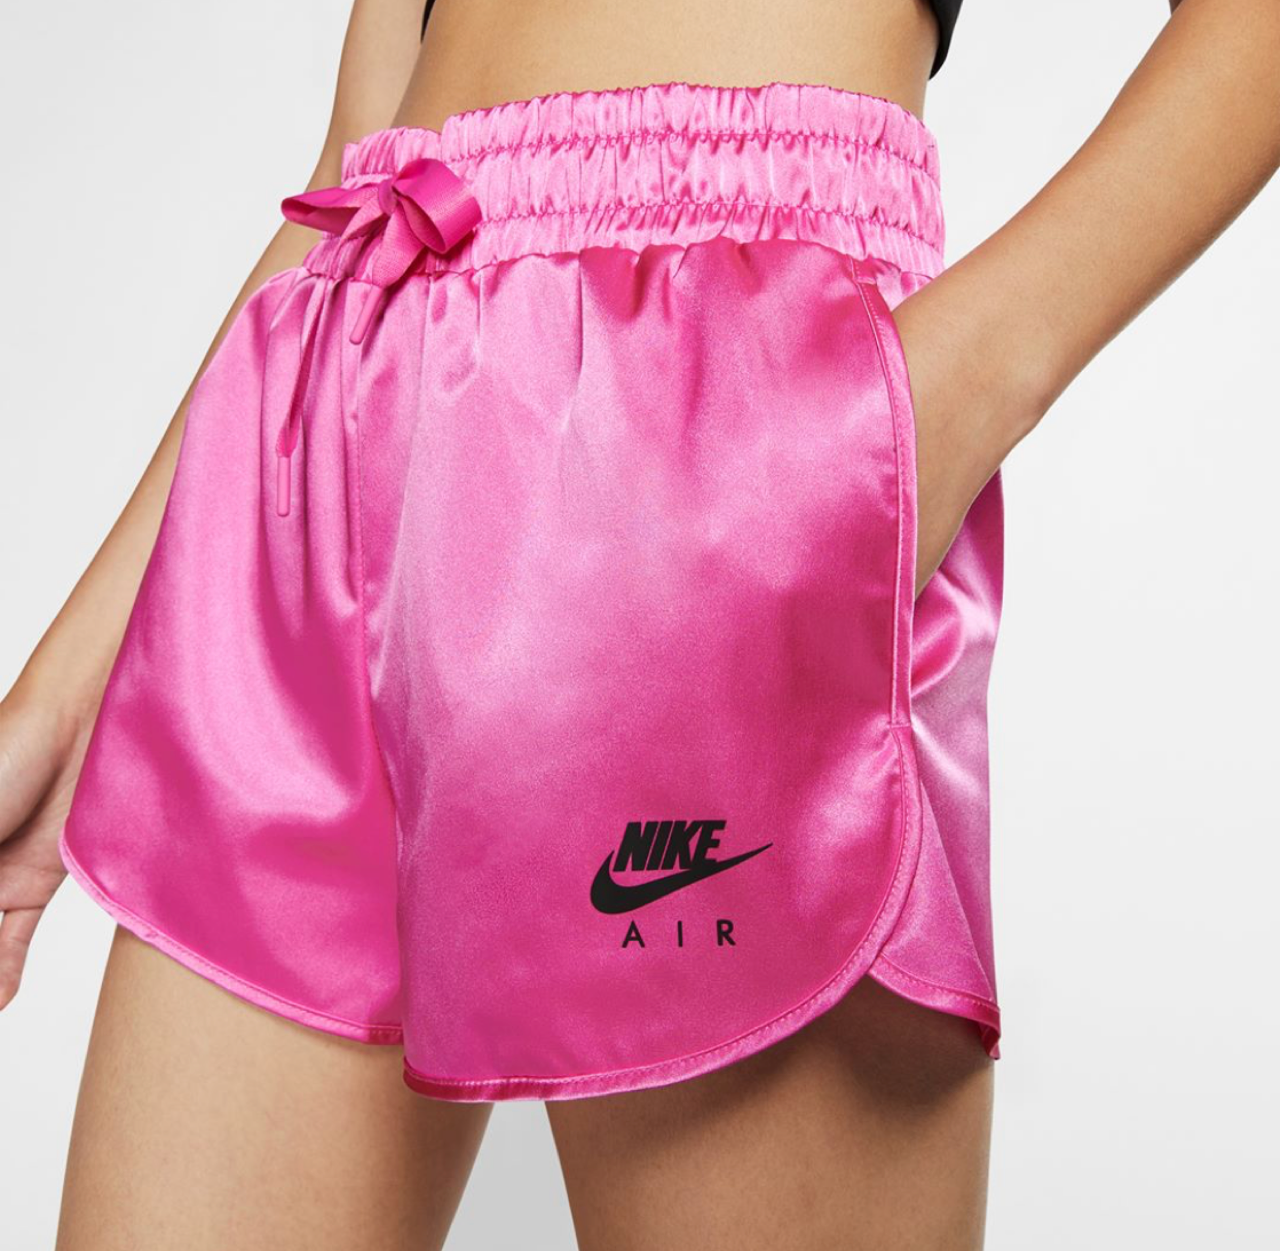 nike pink satin shorts